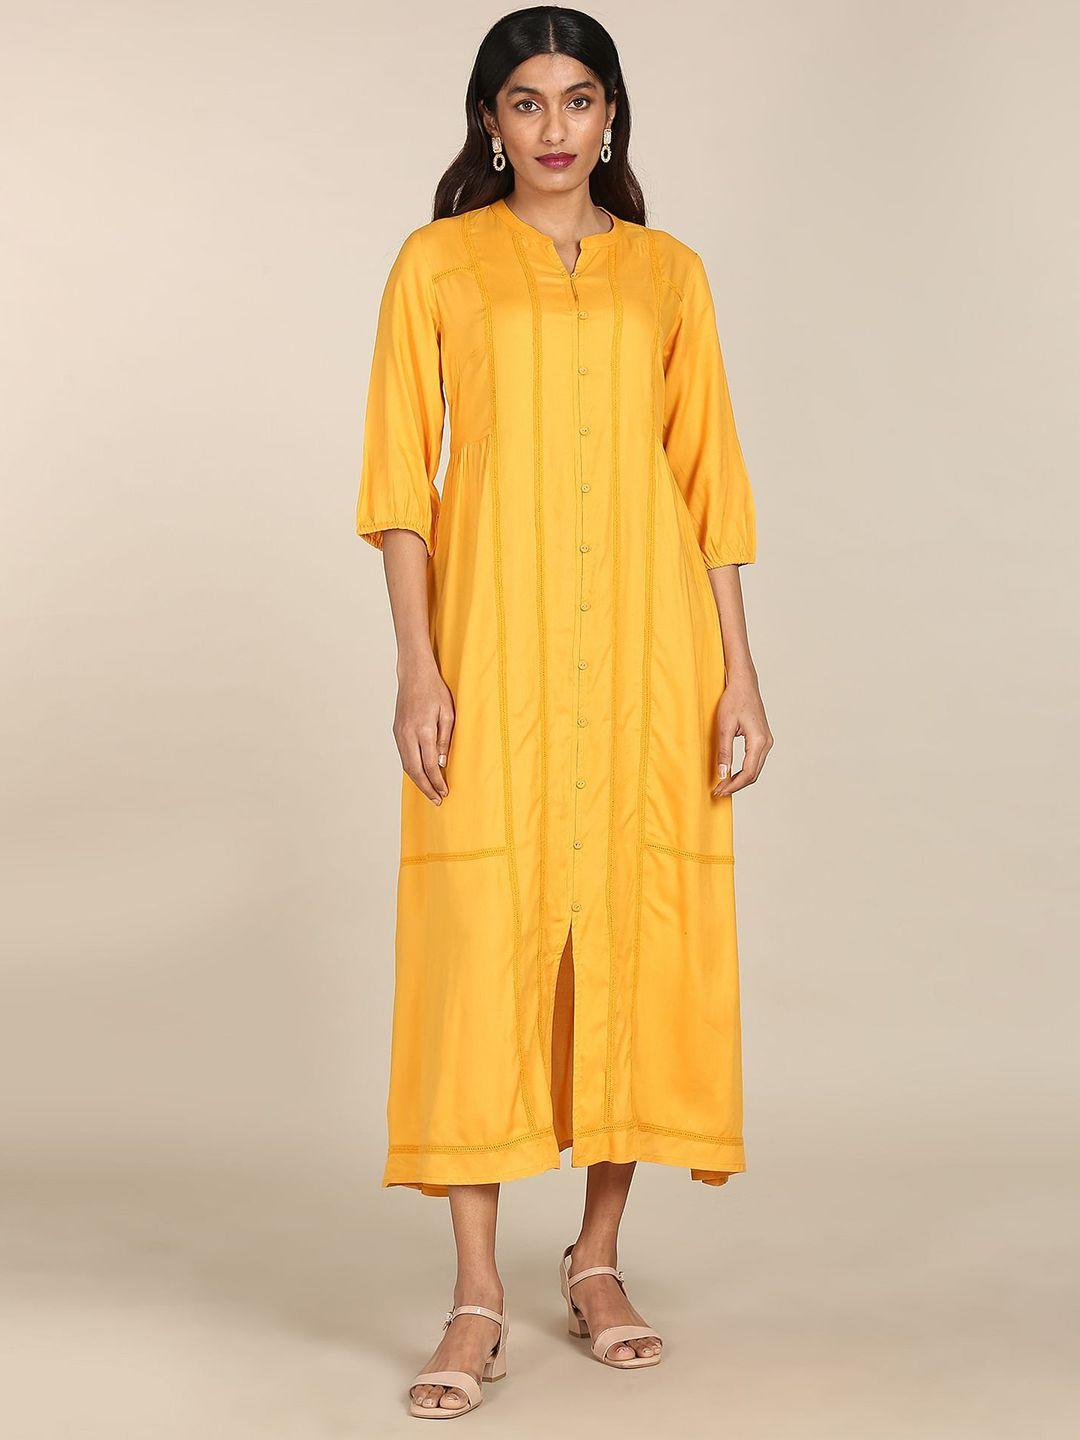 karigari-yellow-shirt-midi-dress